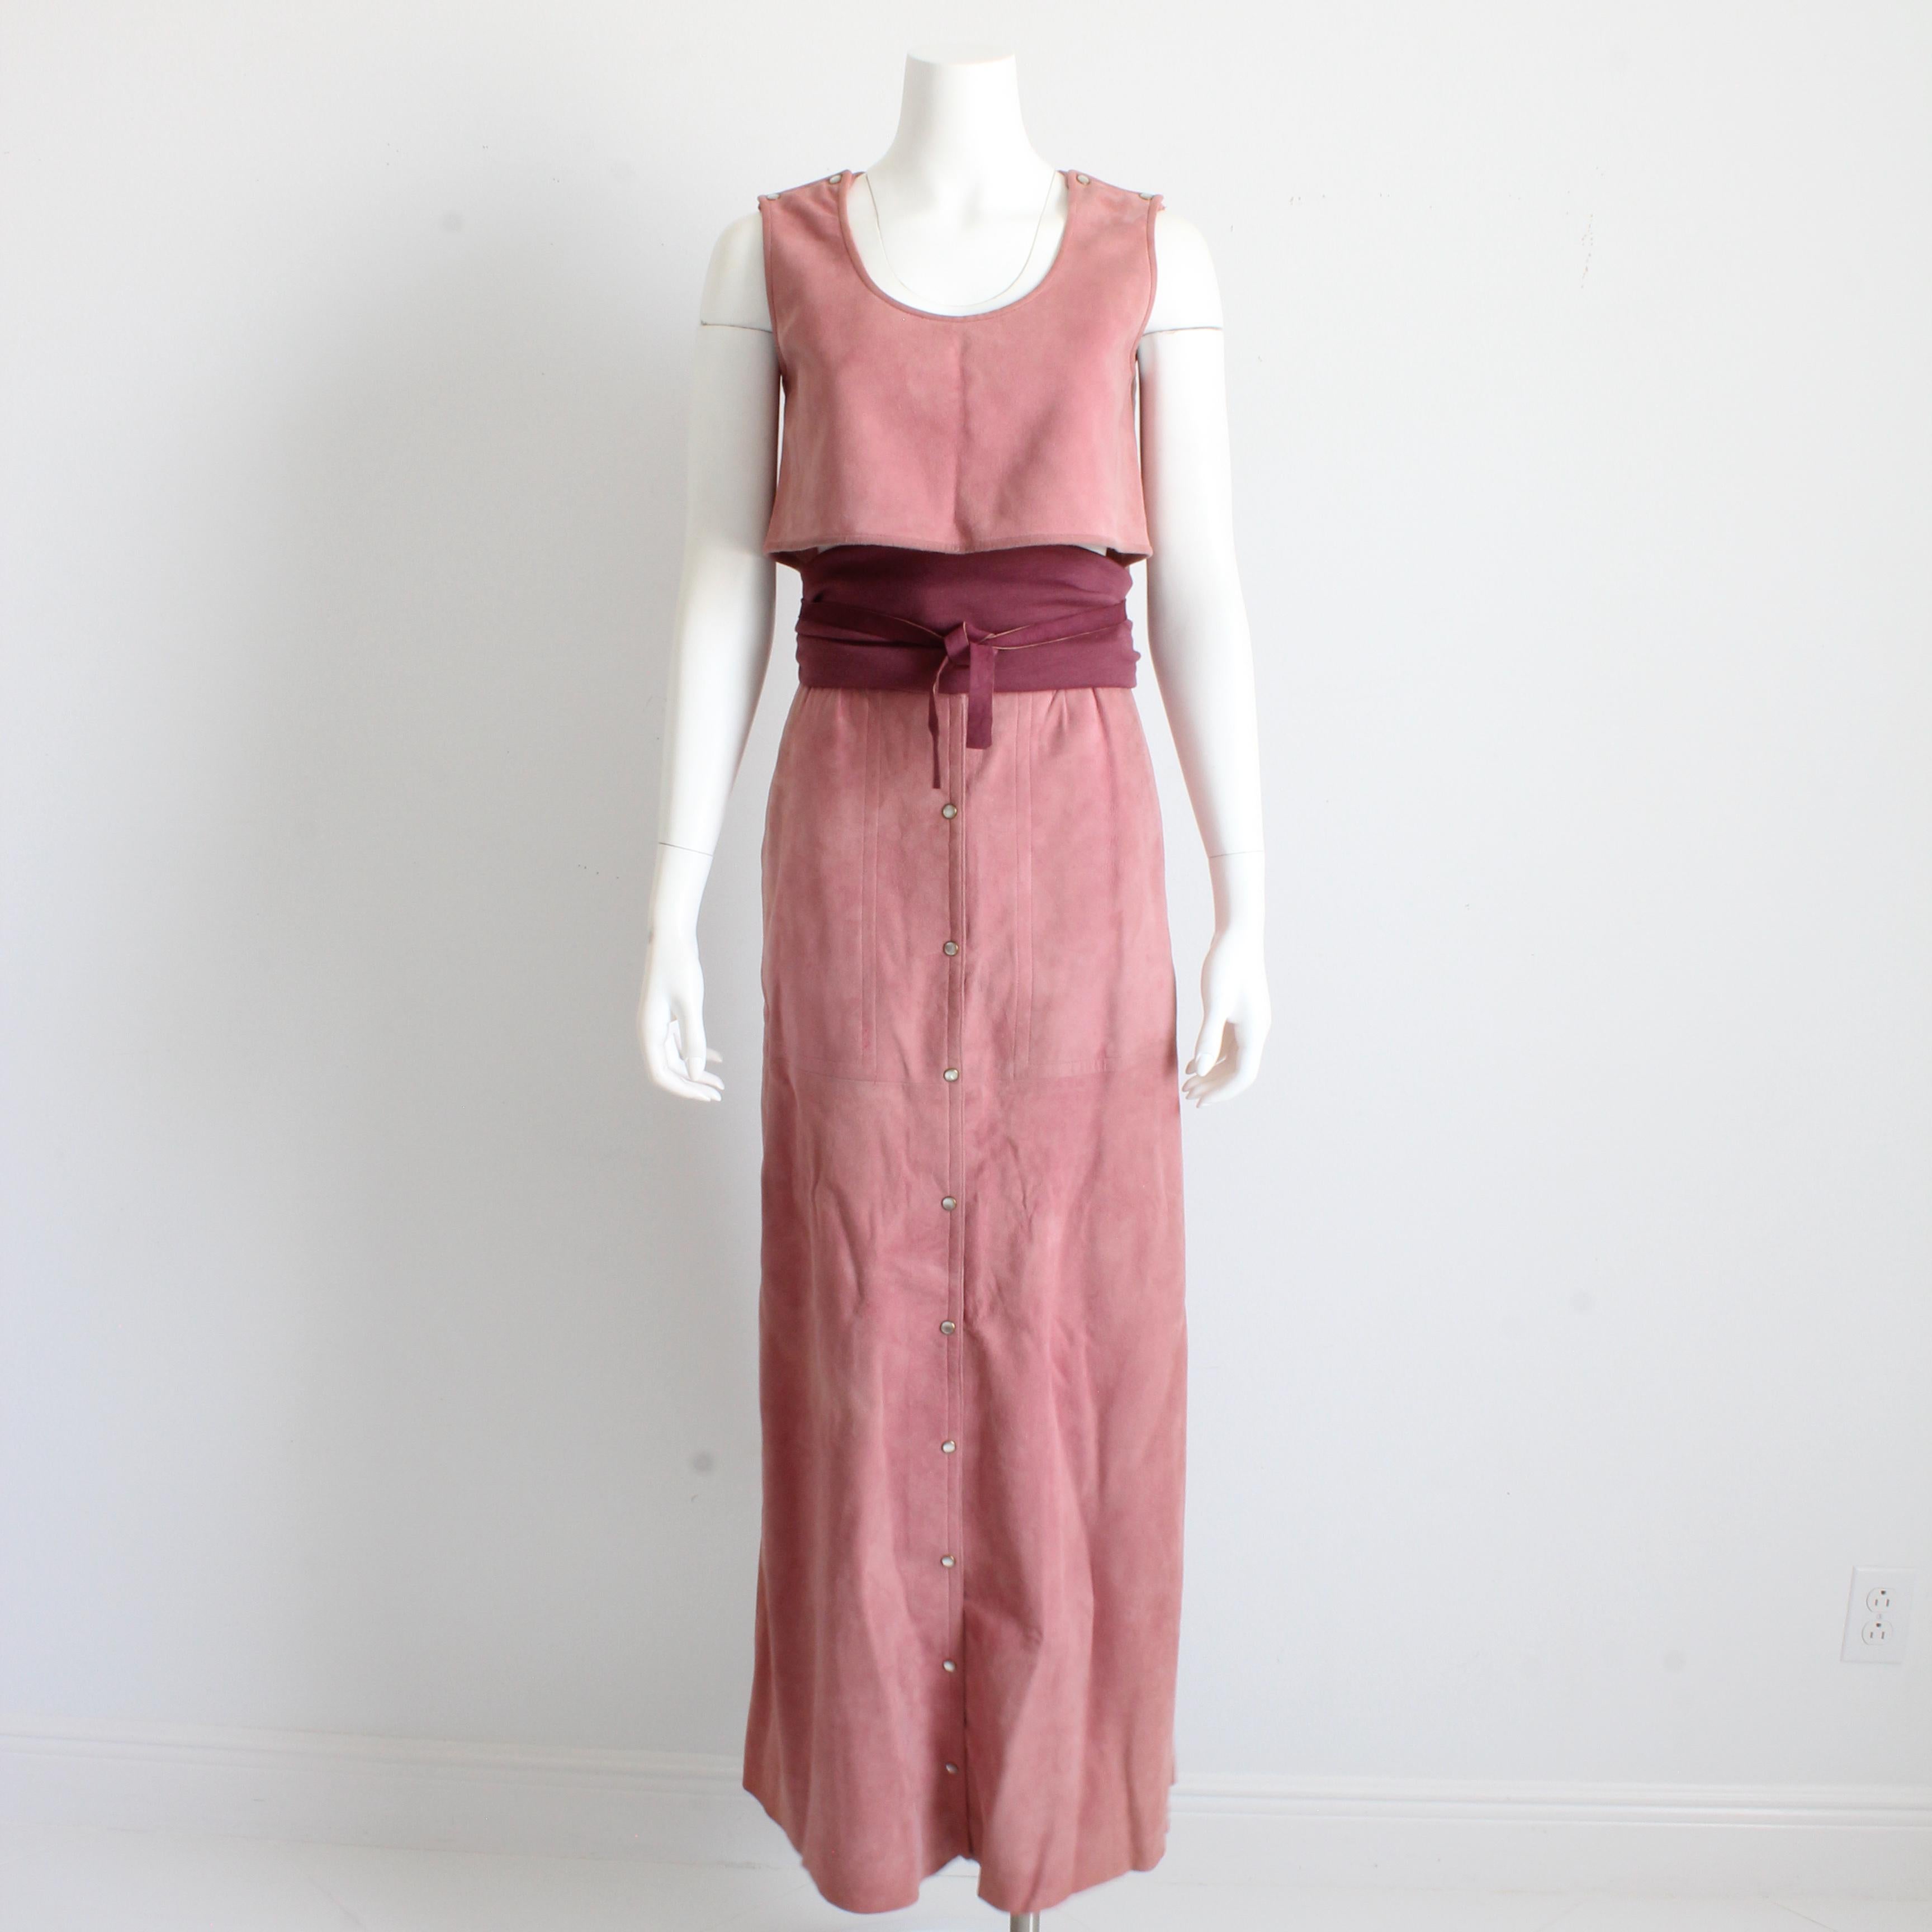 Vintage et rare Bonnie Cashin for Sills 3pc Skirt Set, probablement fabriqué au début des années 70.  

Confectionné en daim chamoisé rose pâle, l'ensemble comprend un débardeur, une jupe longue assortie et une ceinture de style Obi en jersey de